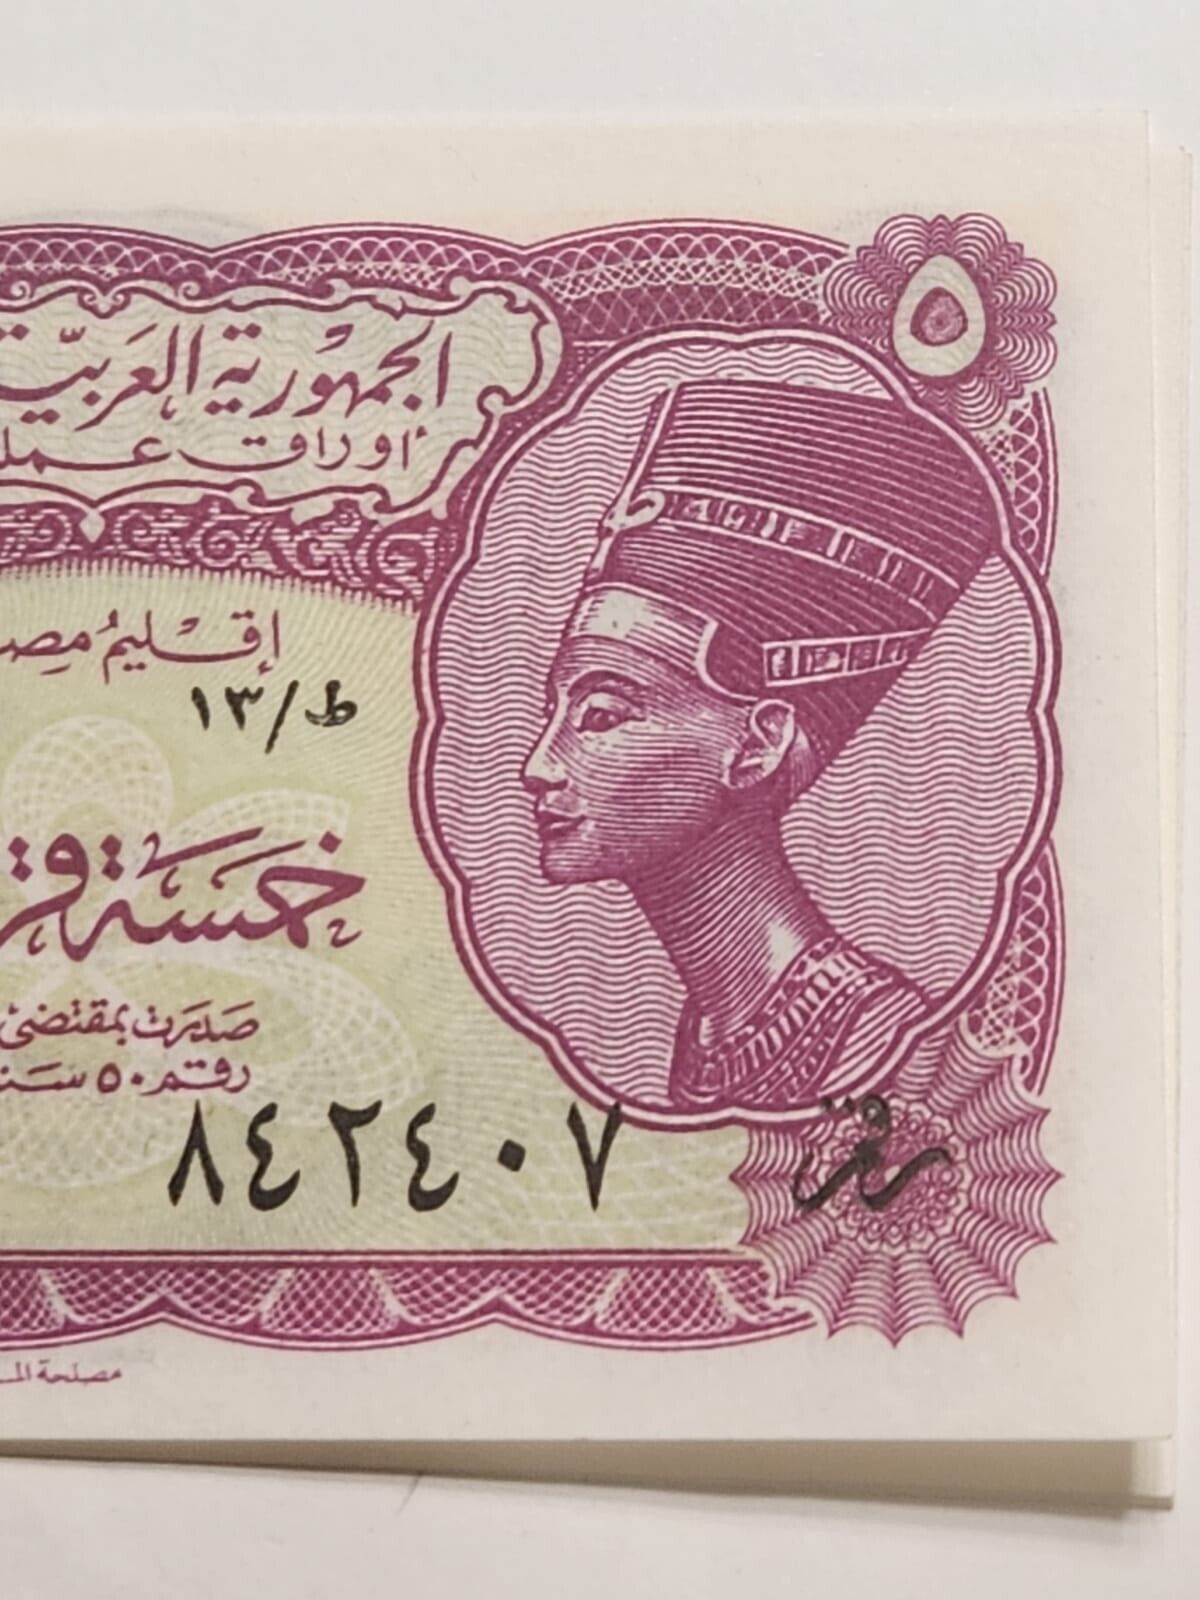 Egypt 5 Piastres L1940 (1958)  Signed Hassan Salah Eldin P176 CU est $50 .Eg4